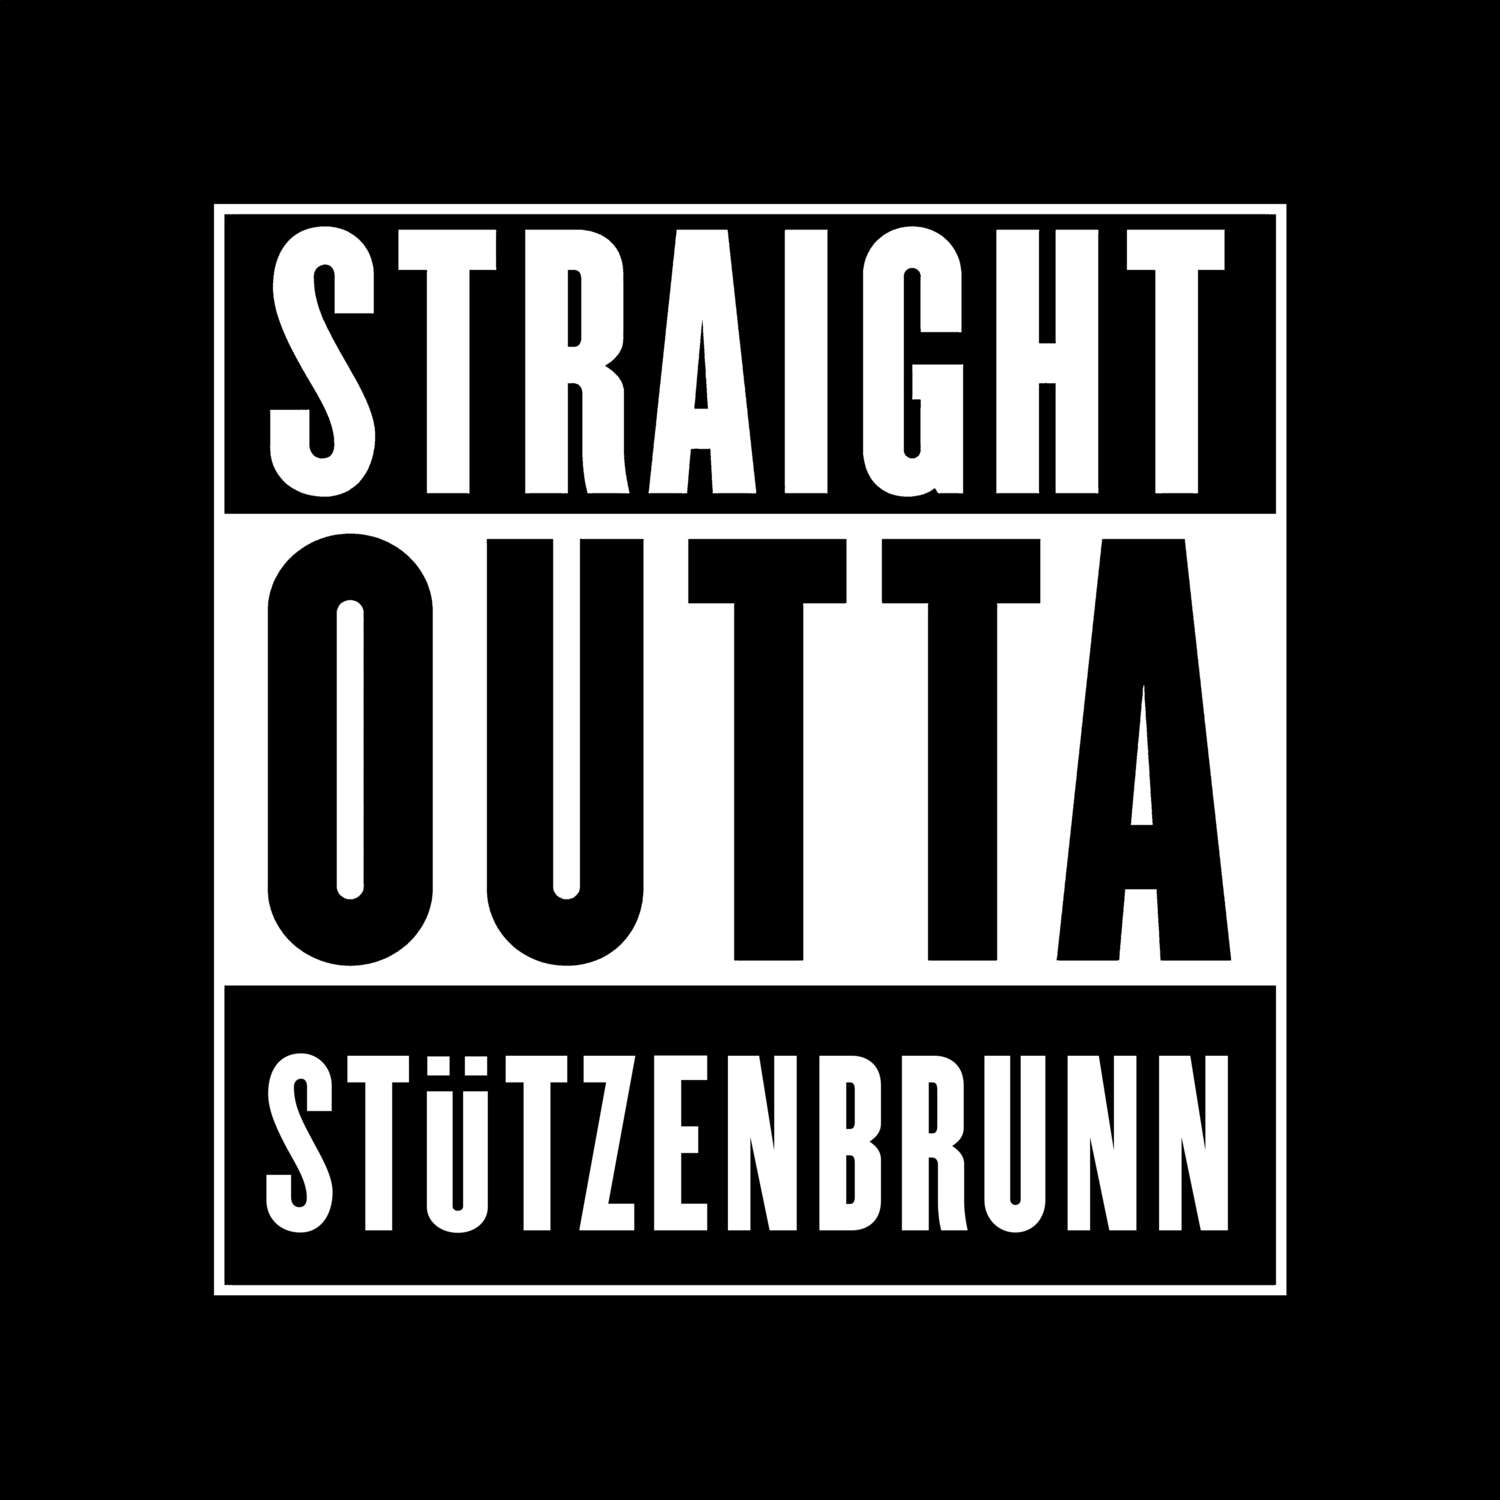 Stützenbrunn T-Shirt »Straight Outta«